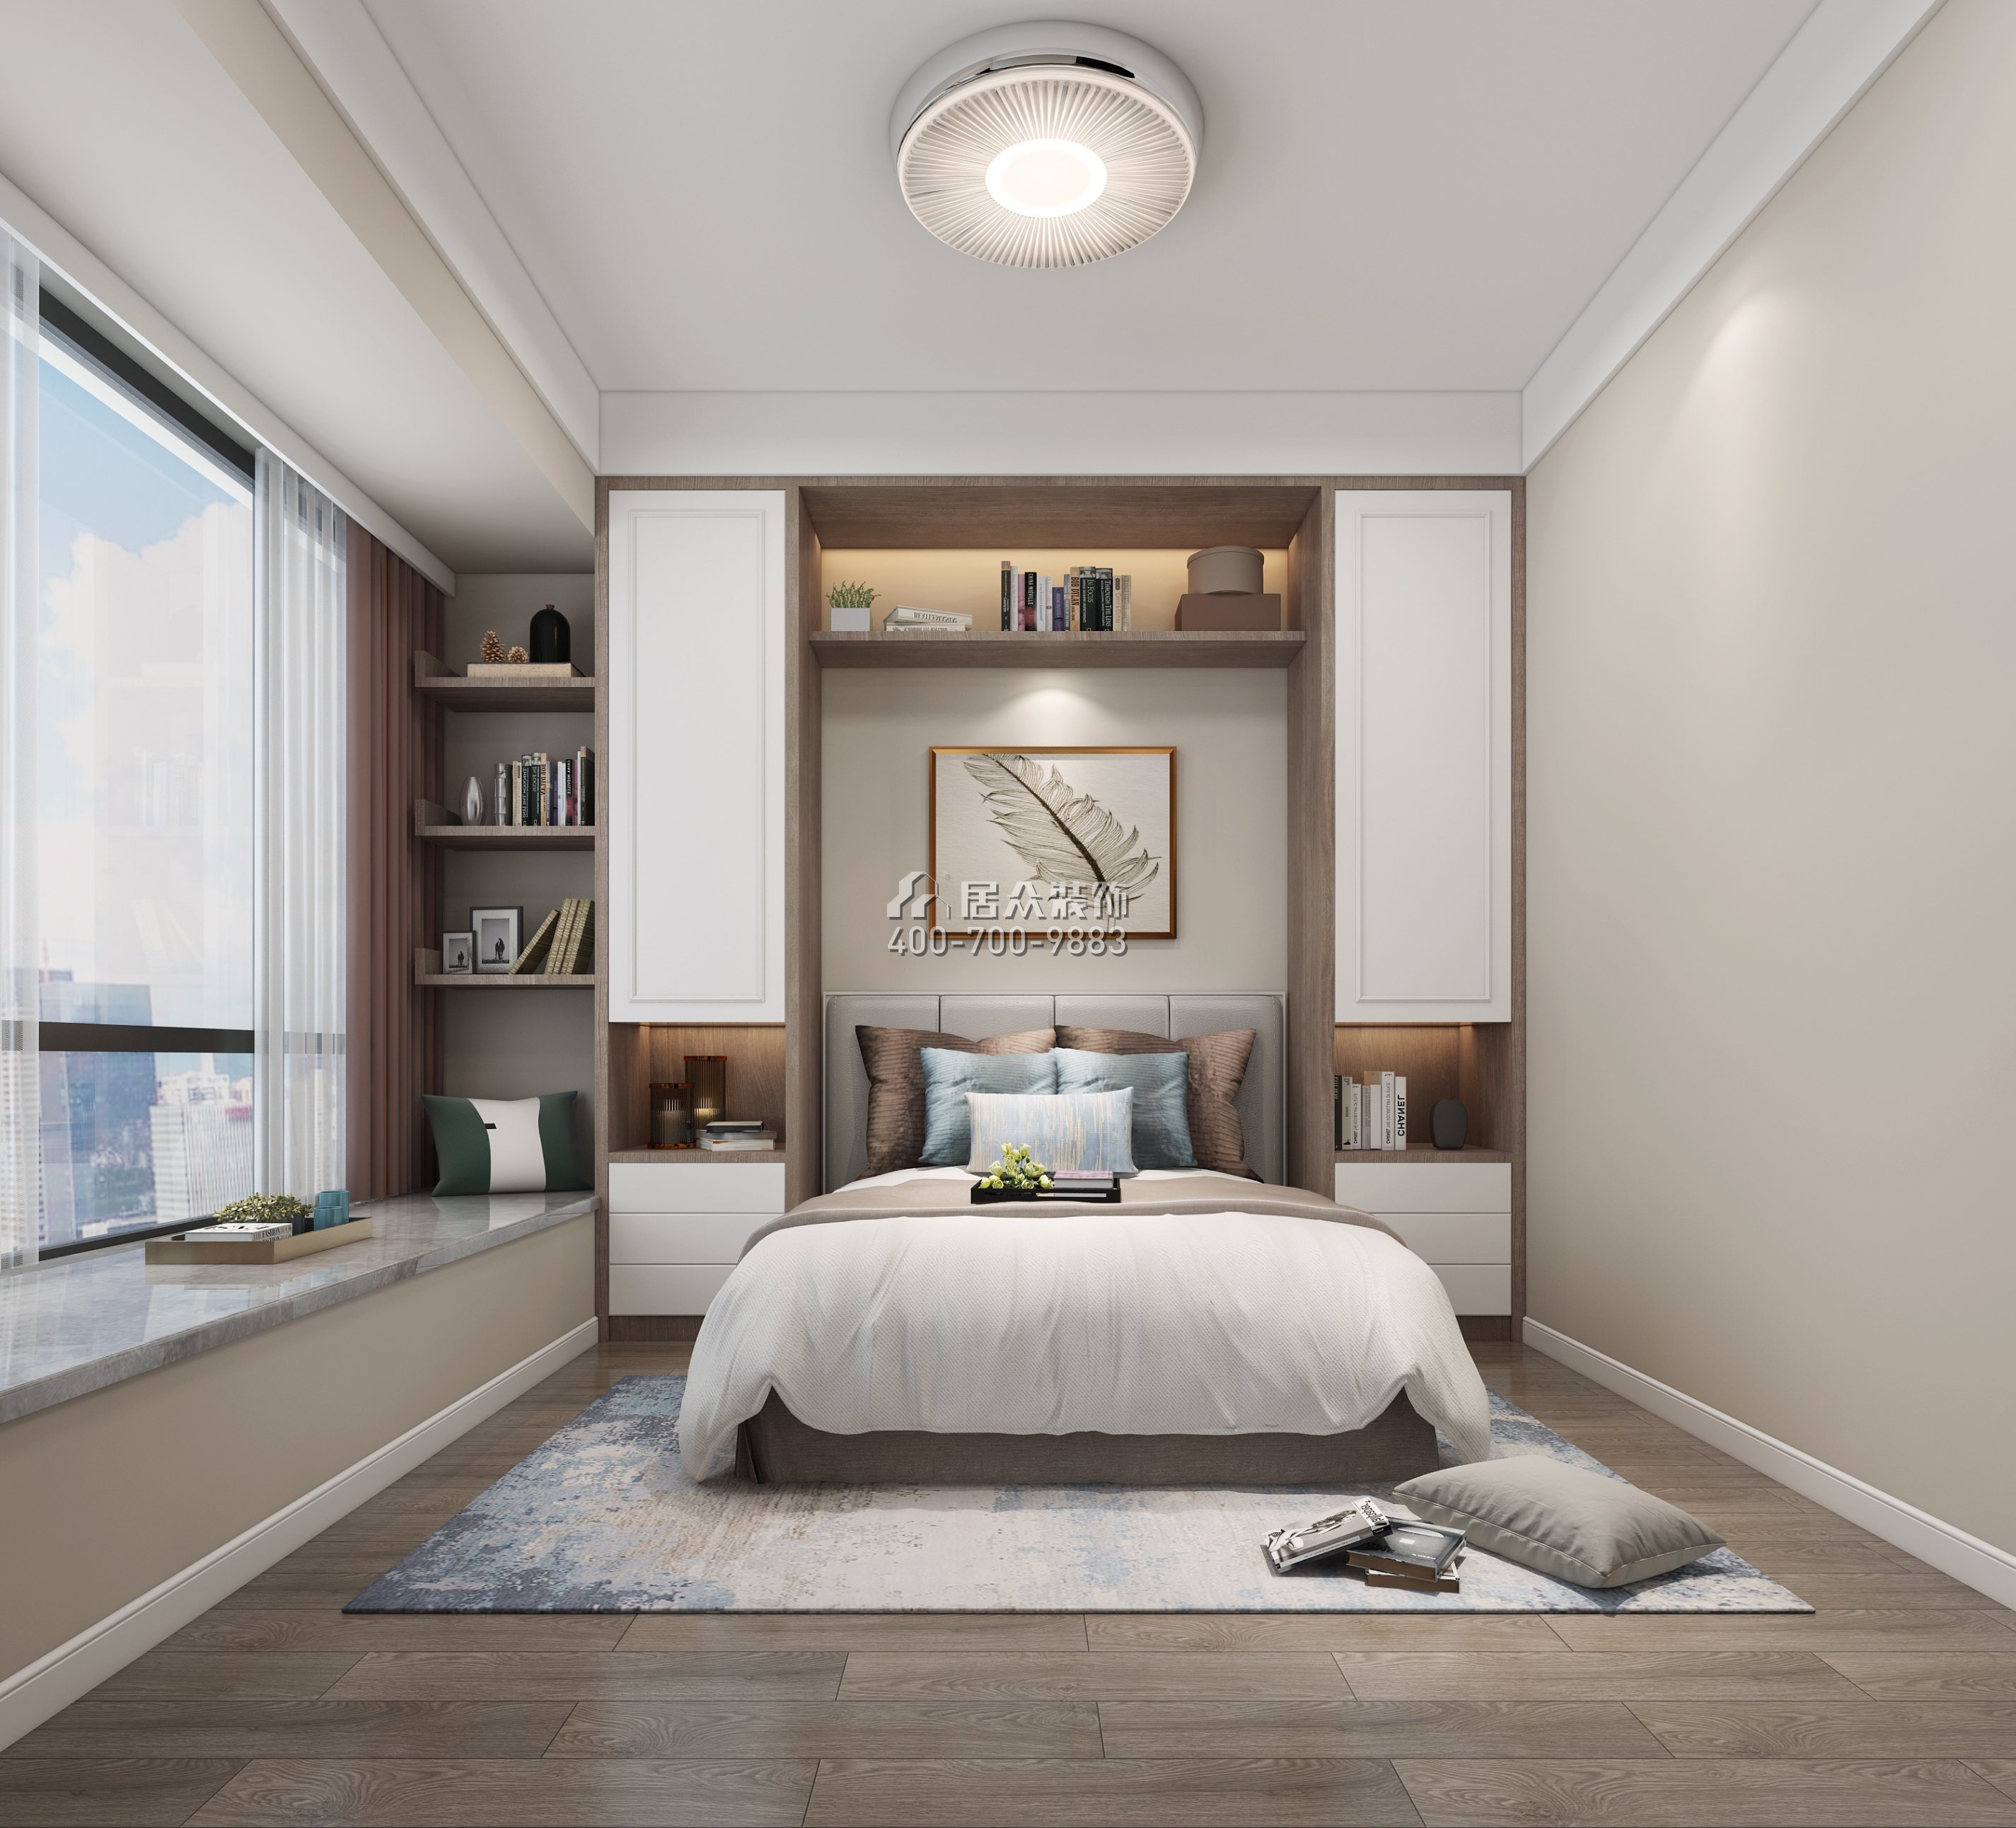 壹方中心110平方米現代簡約風格平層戶型臥室裝修效果圖